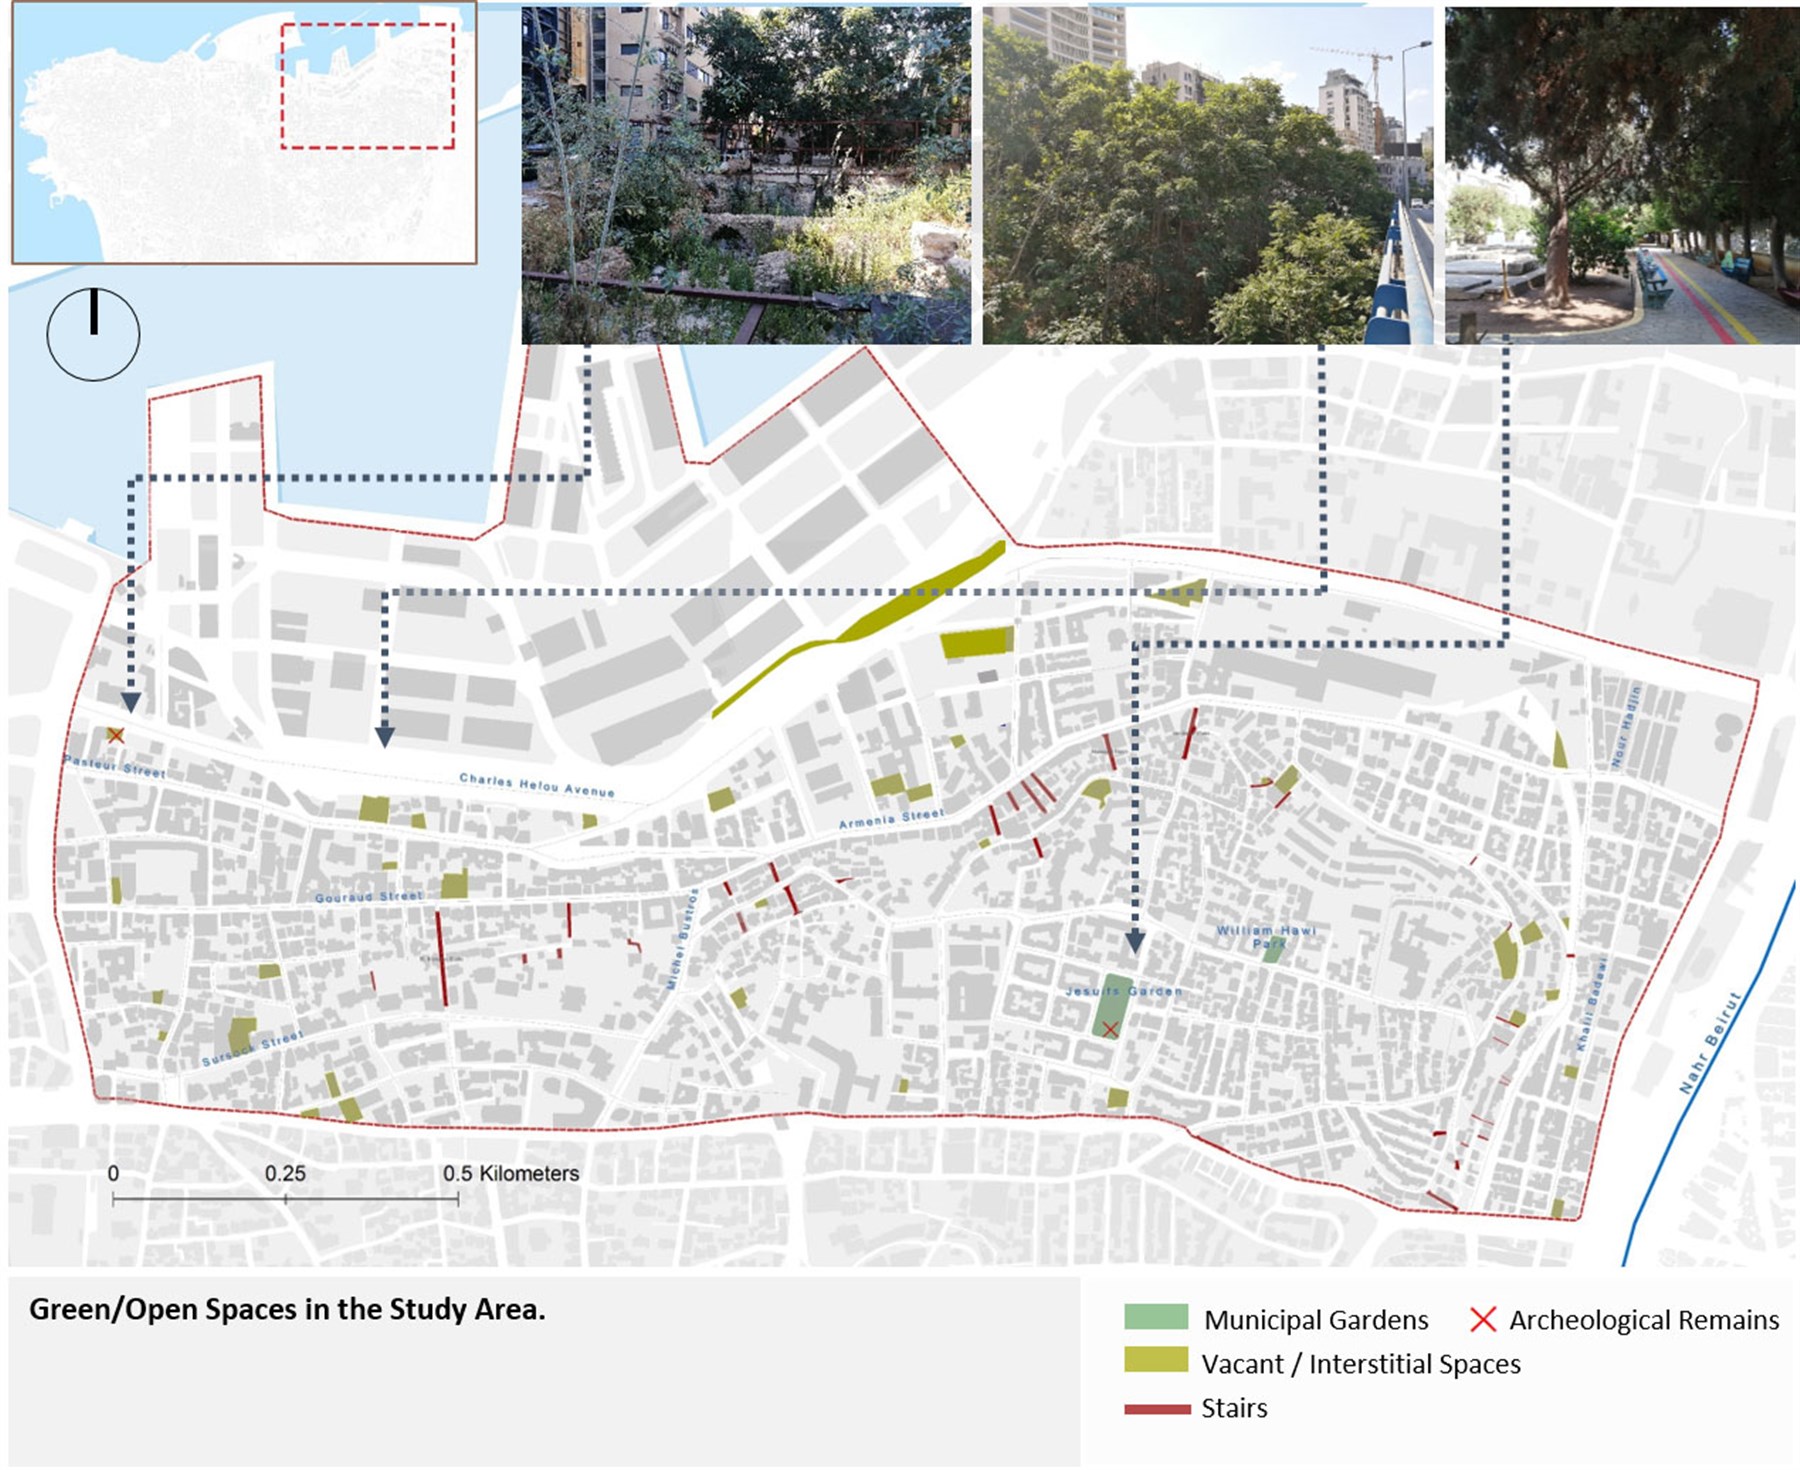 (Source: Beirut Urban Lab, 2021)